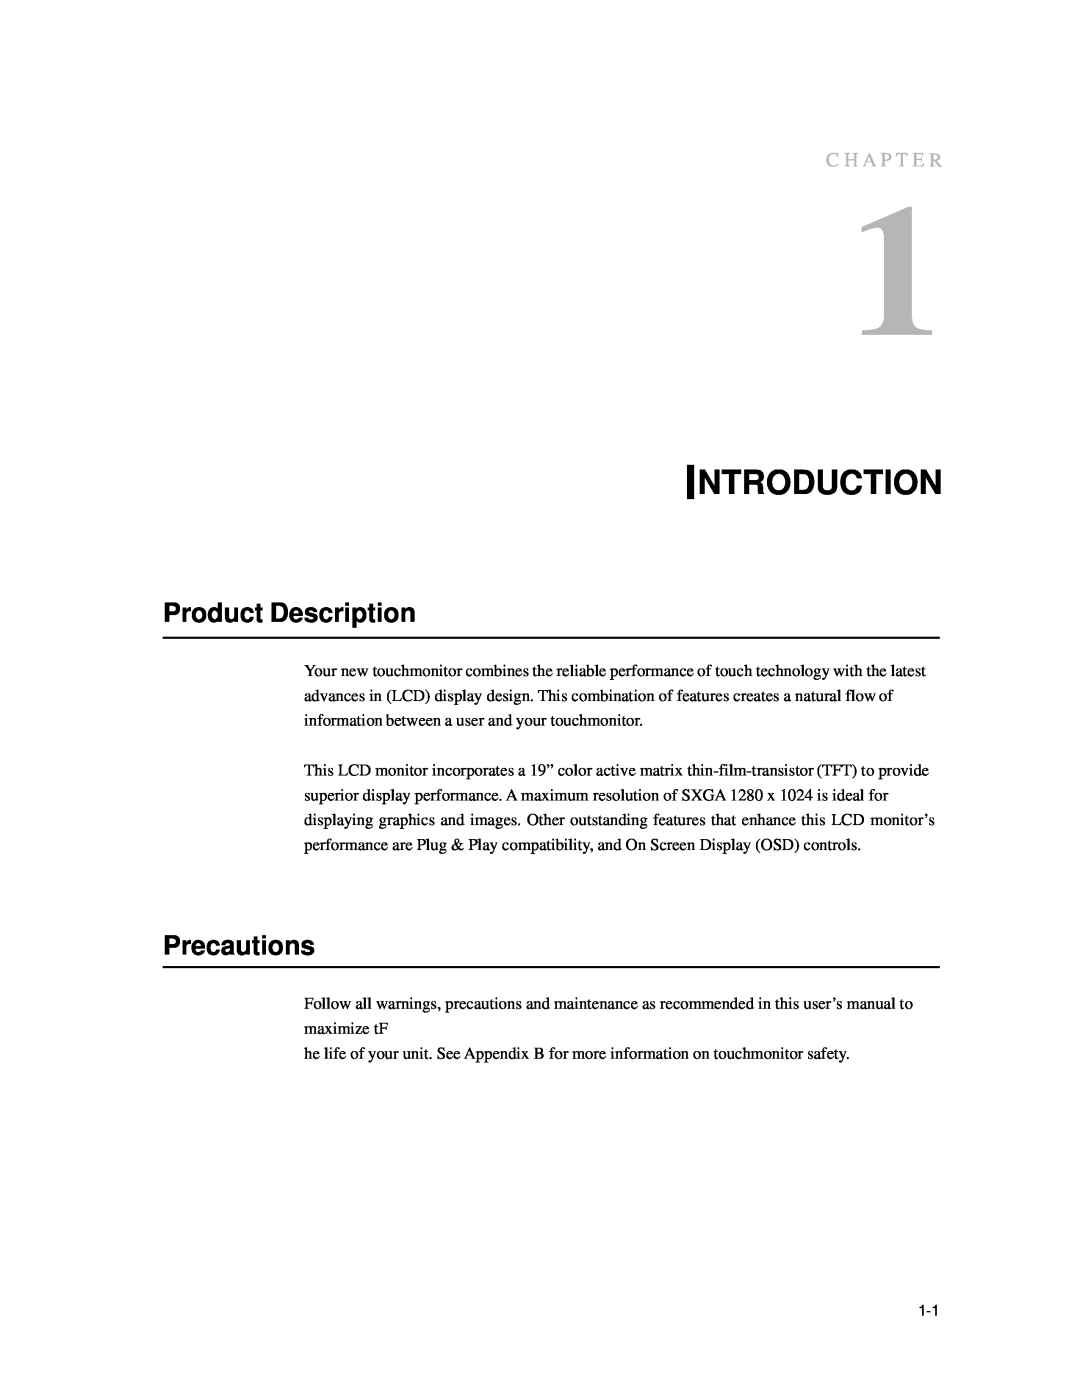 Elo TouchSystems 1939L manual Introduction, Product Description, Precautions, C H A P T E R 